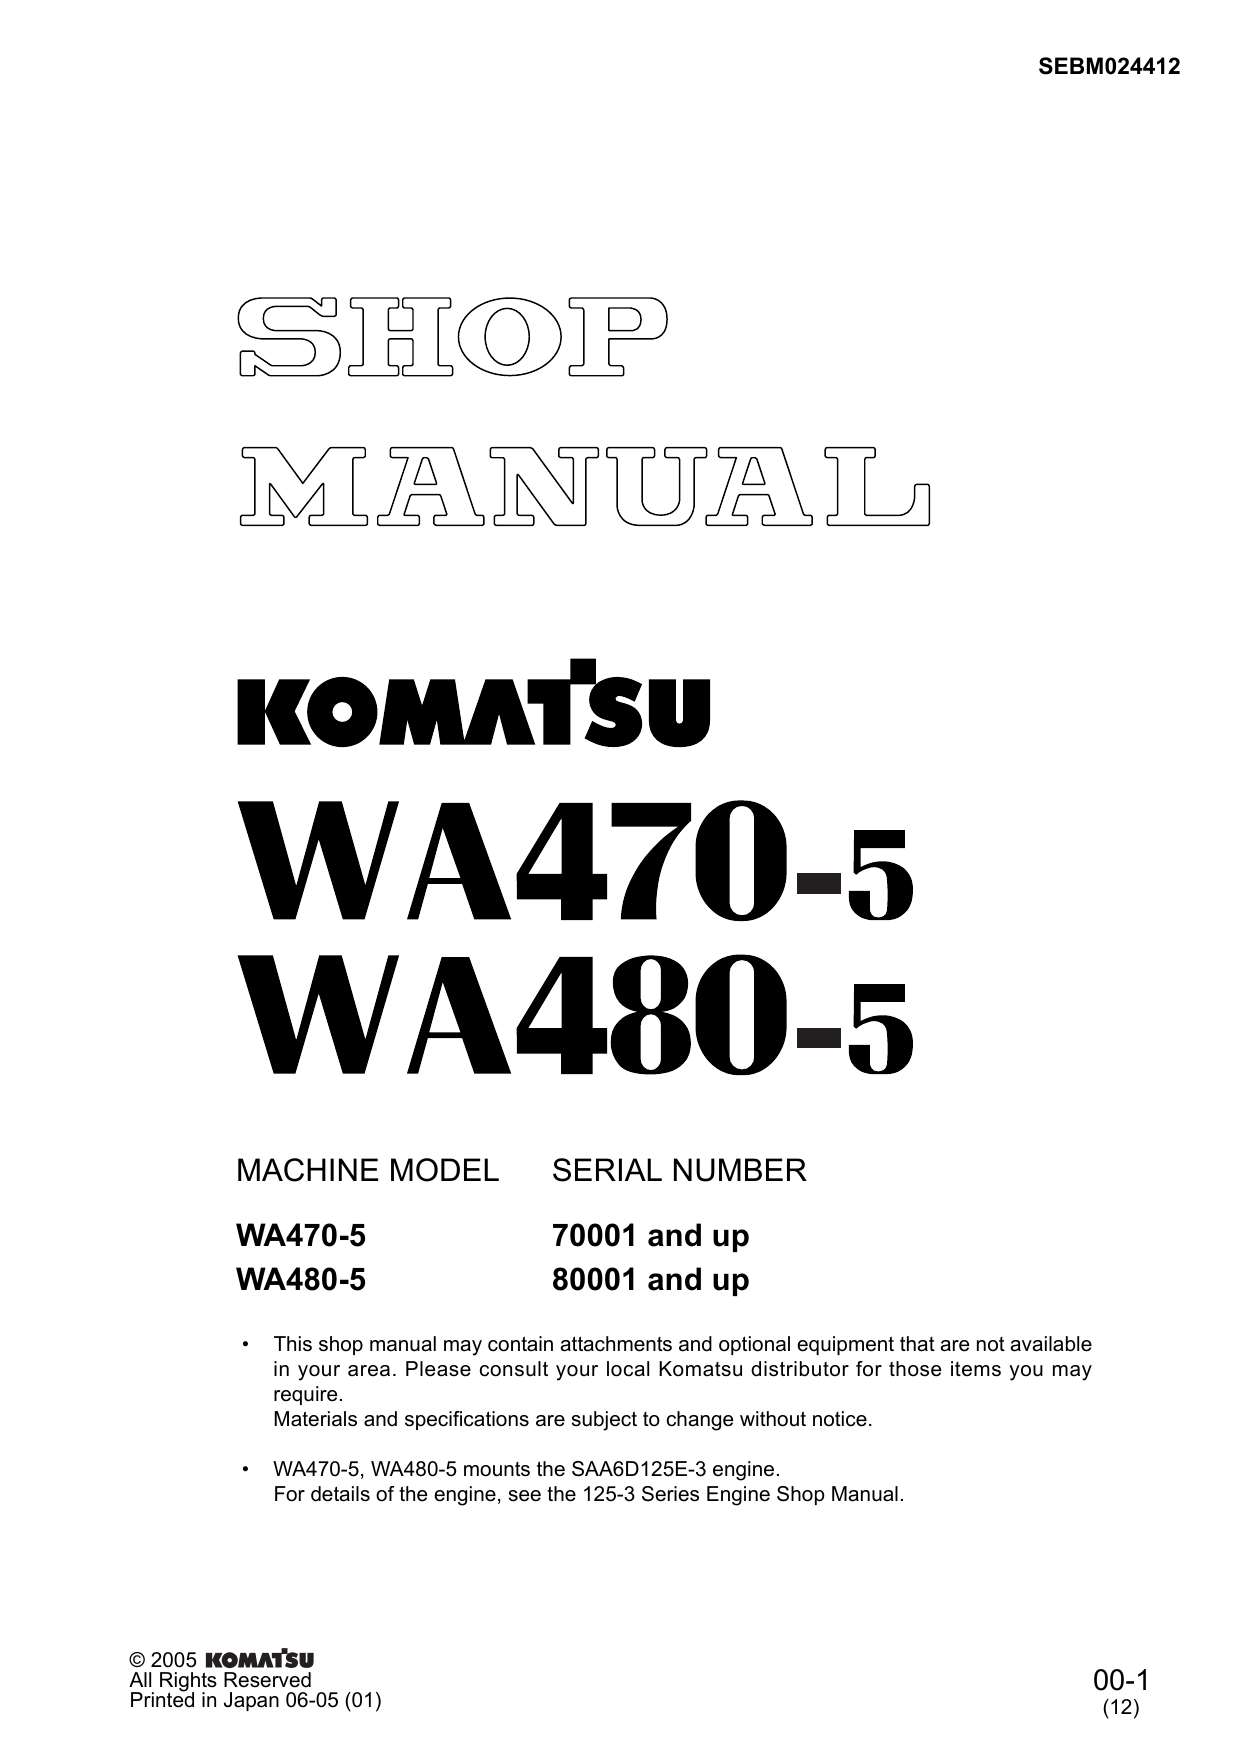 Komatsu WA470-5, WA480-5 wheel loader shop manual Preview image 1